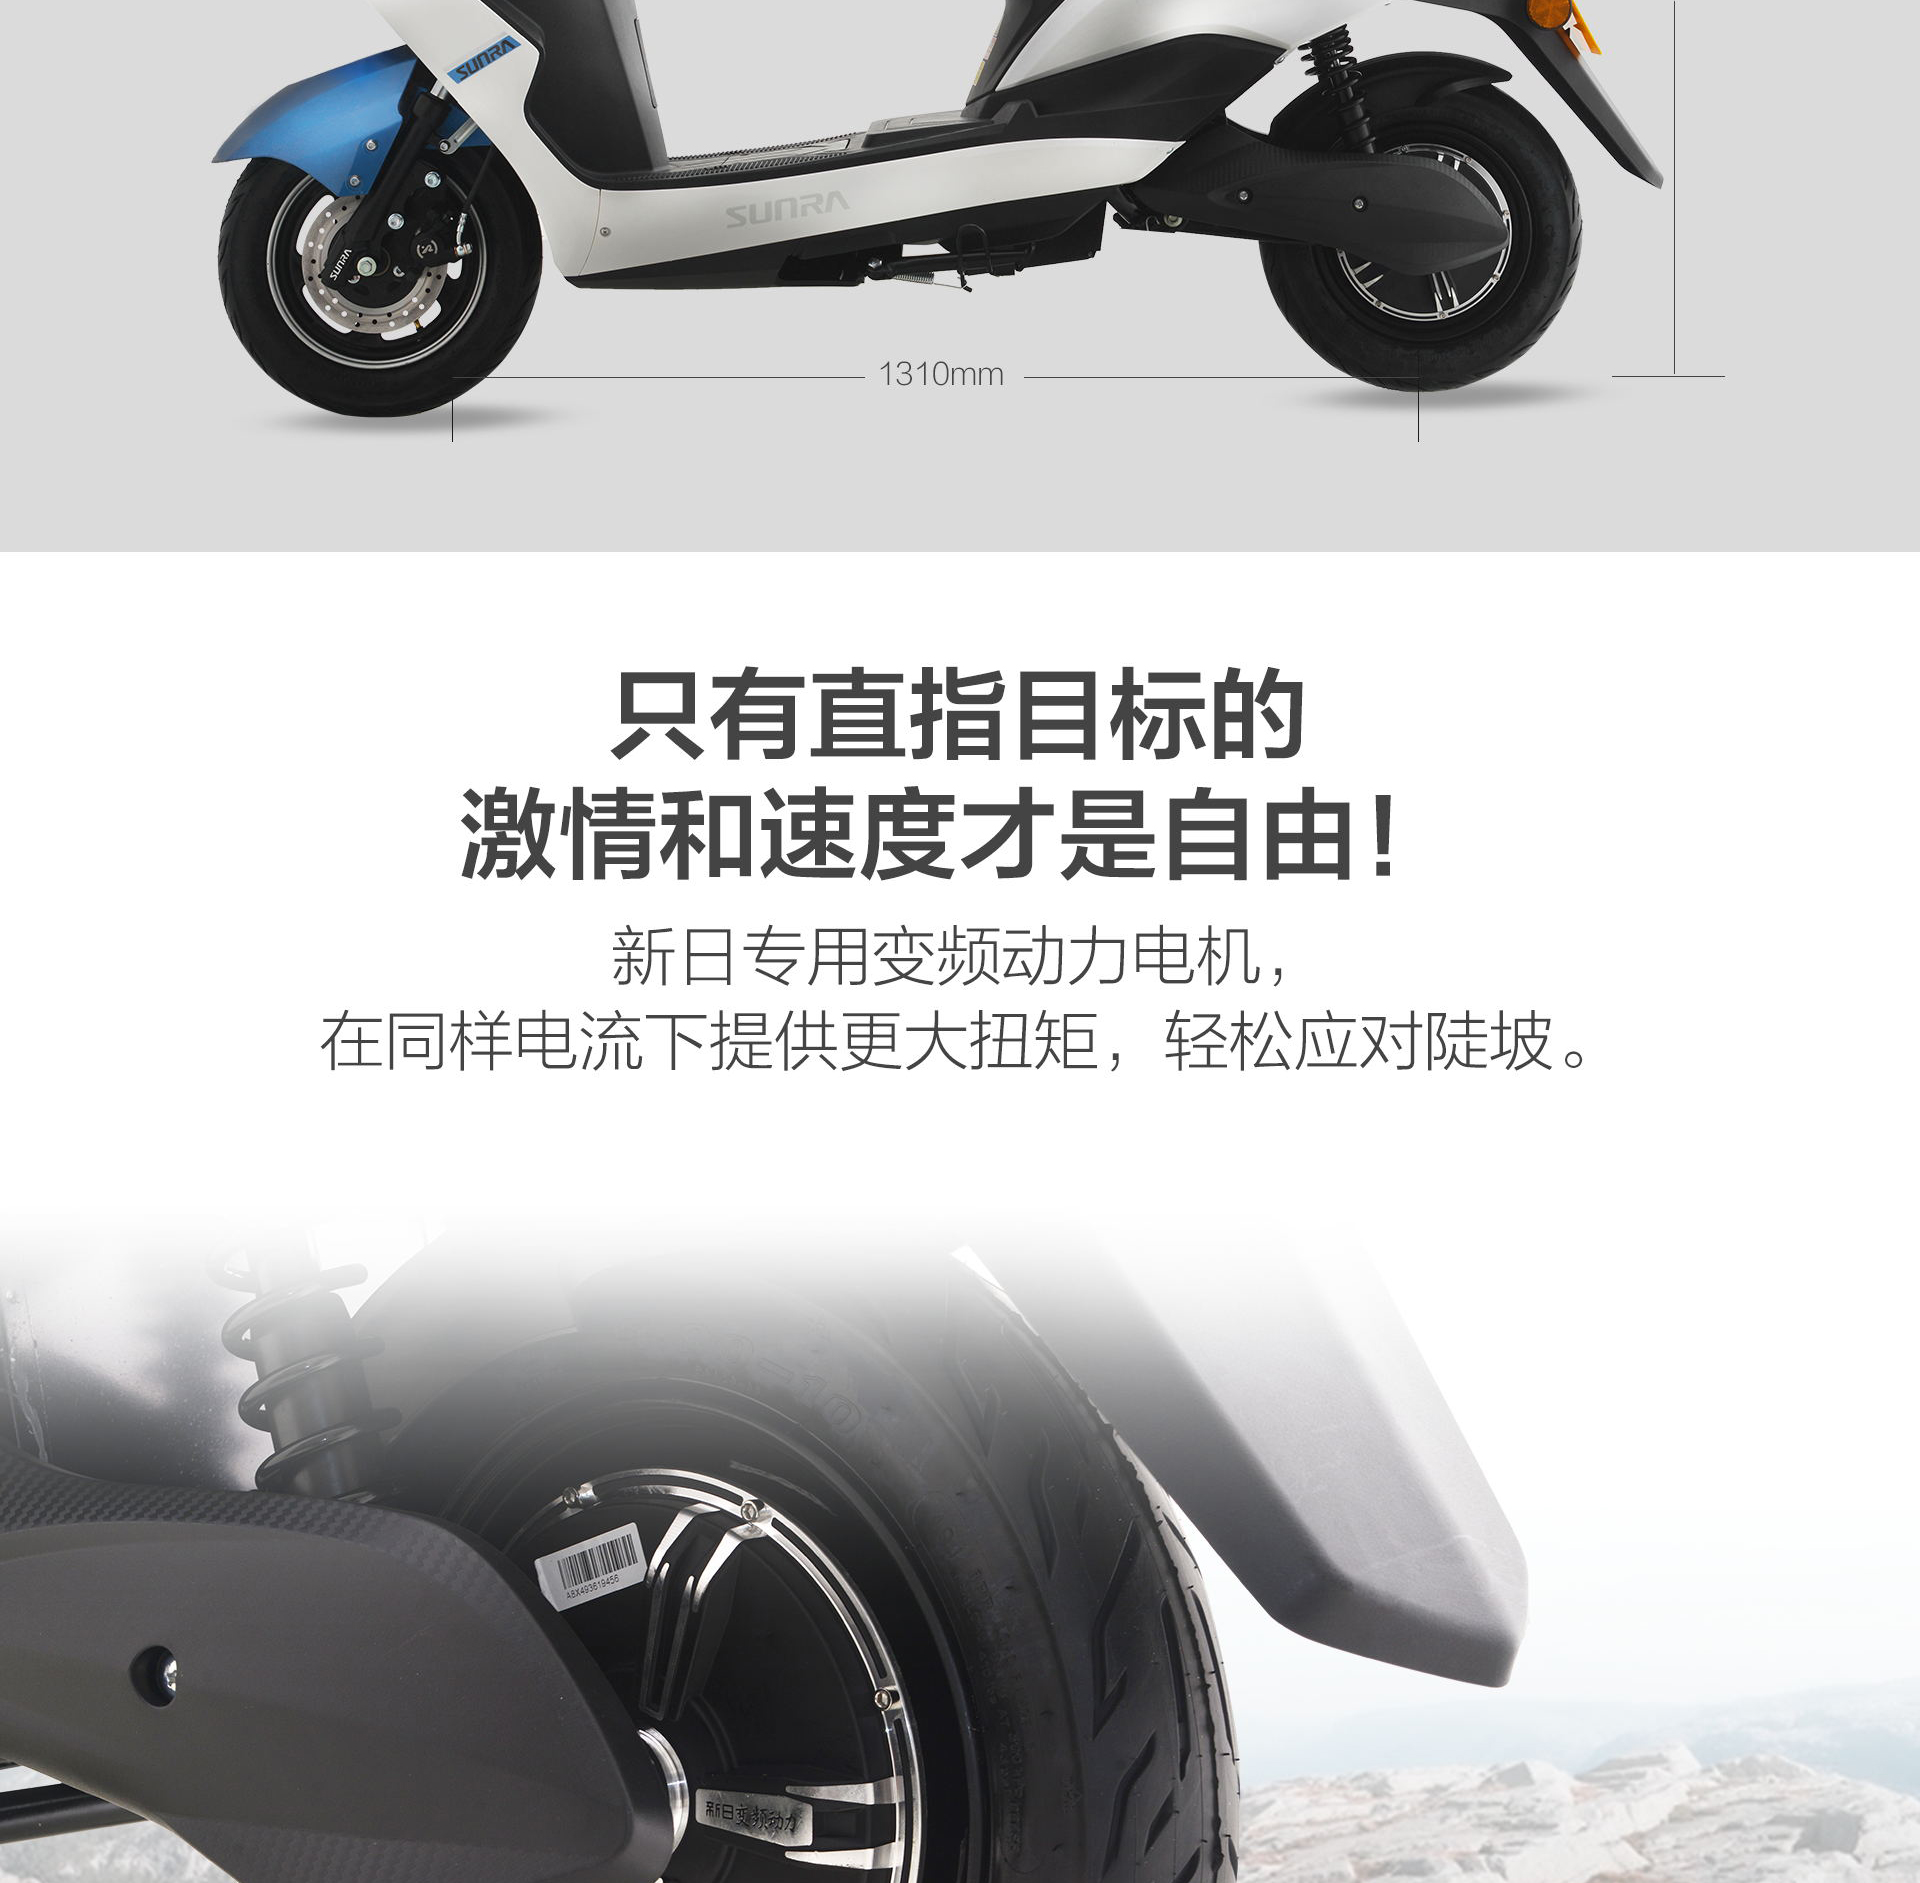 新日sunra电动车电动摩托车h3豪华城市运动款踏板车成人60v电瓶车